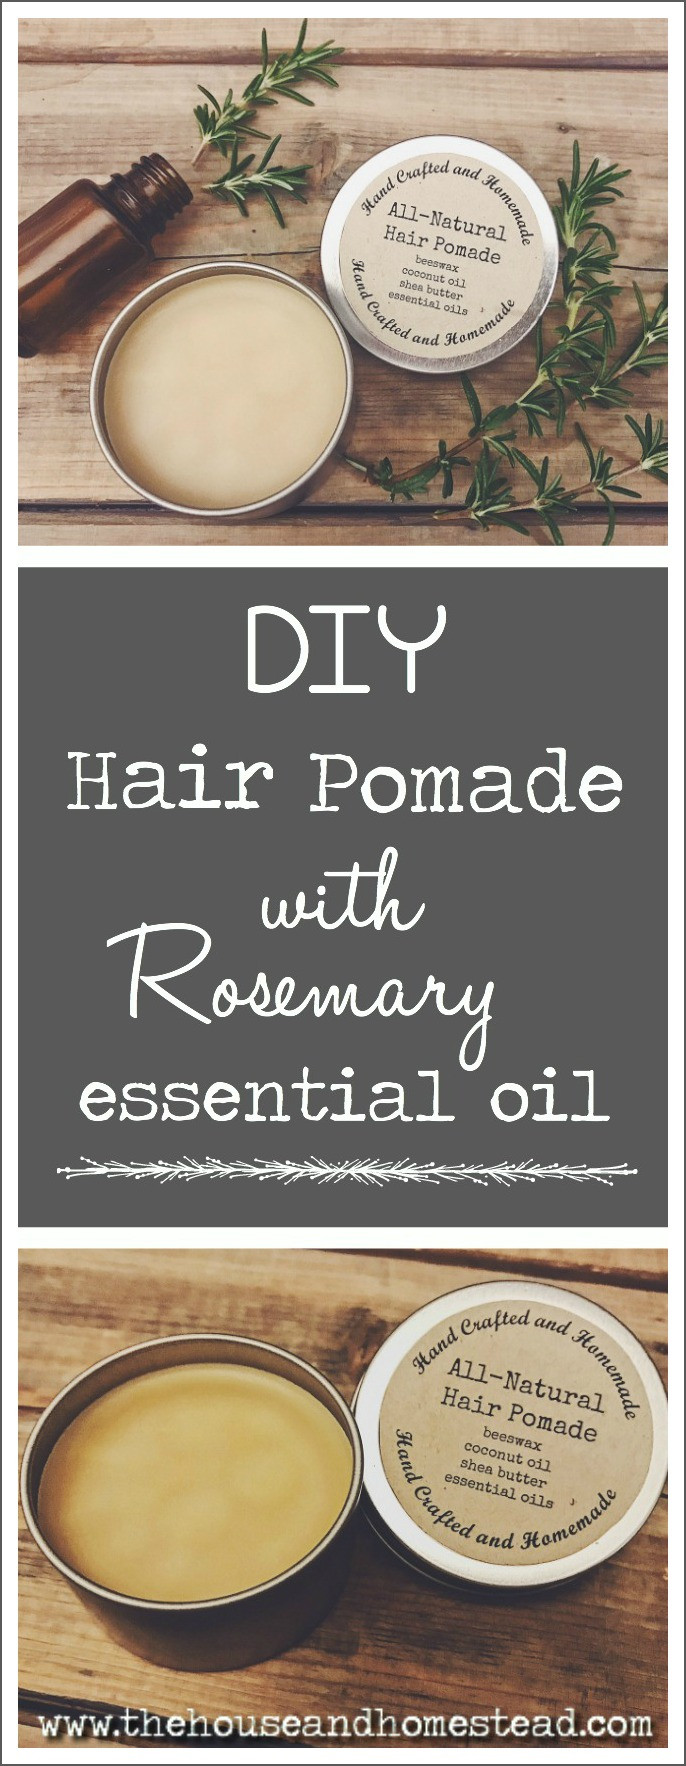 DIY Hair Pomade
 DIY Hair Pomade with Rosemary Essential Oil